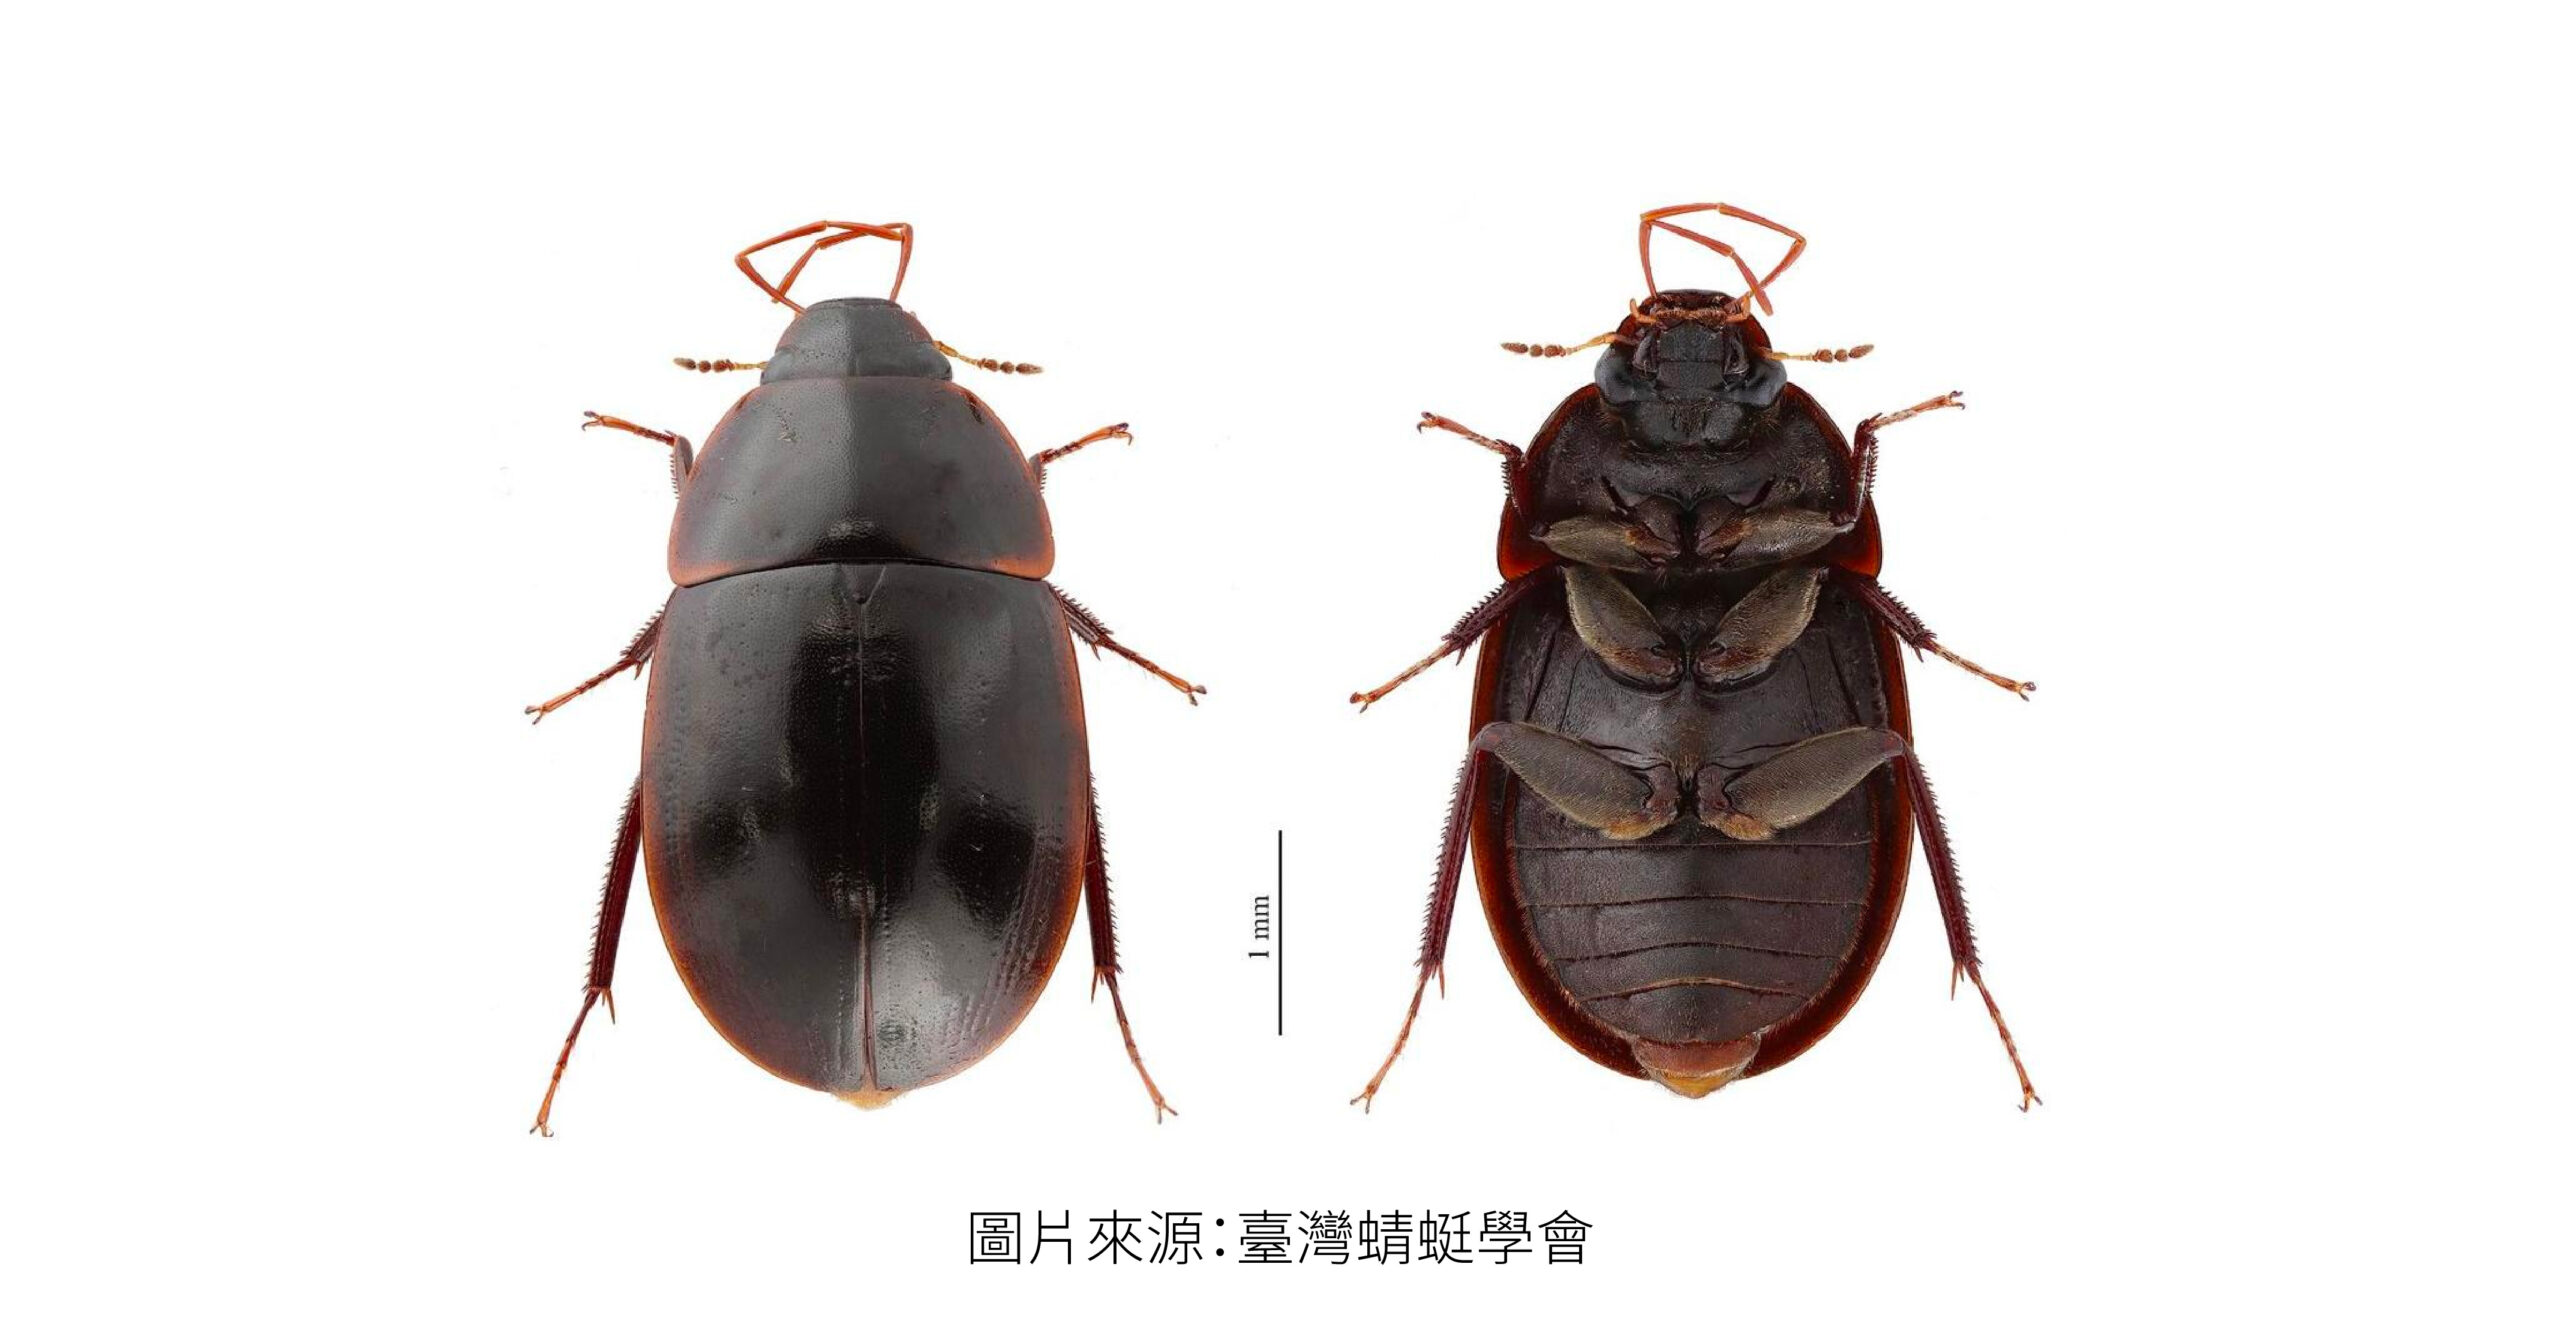 「台灣本島第一筆紀錄」: 新記錄種水生甲蟲...